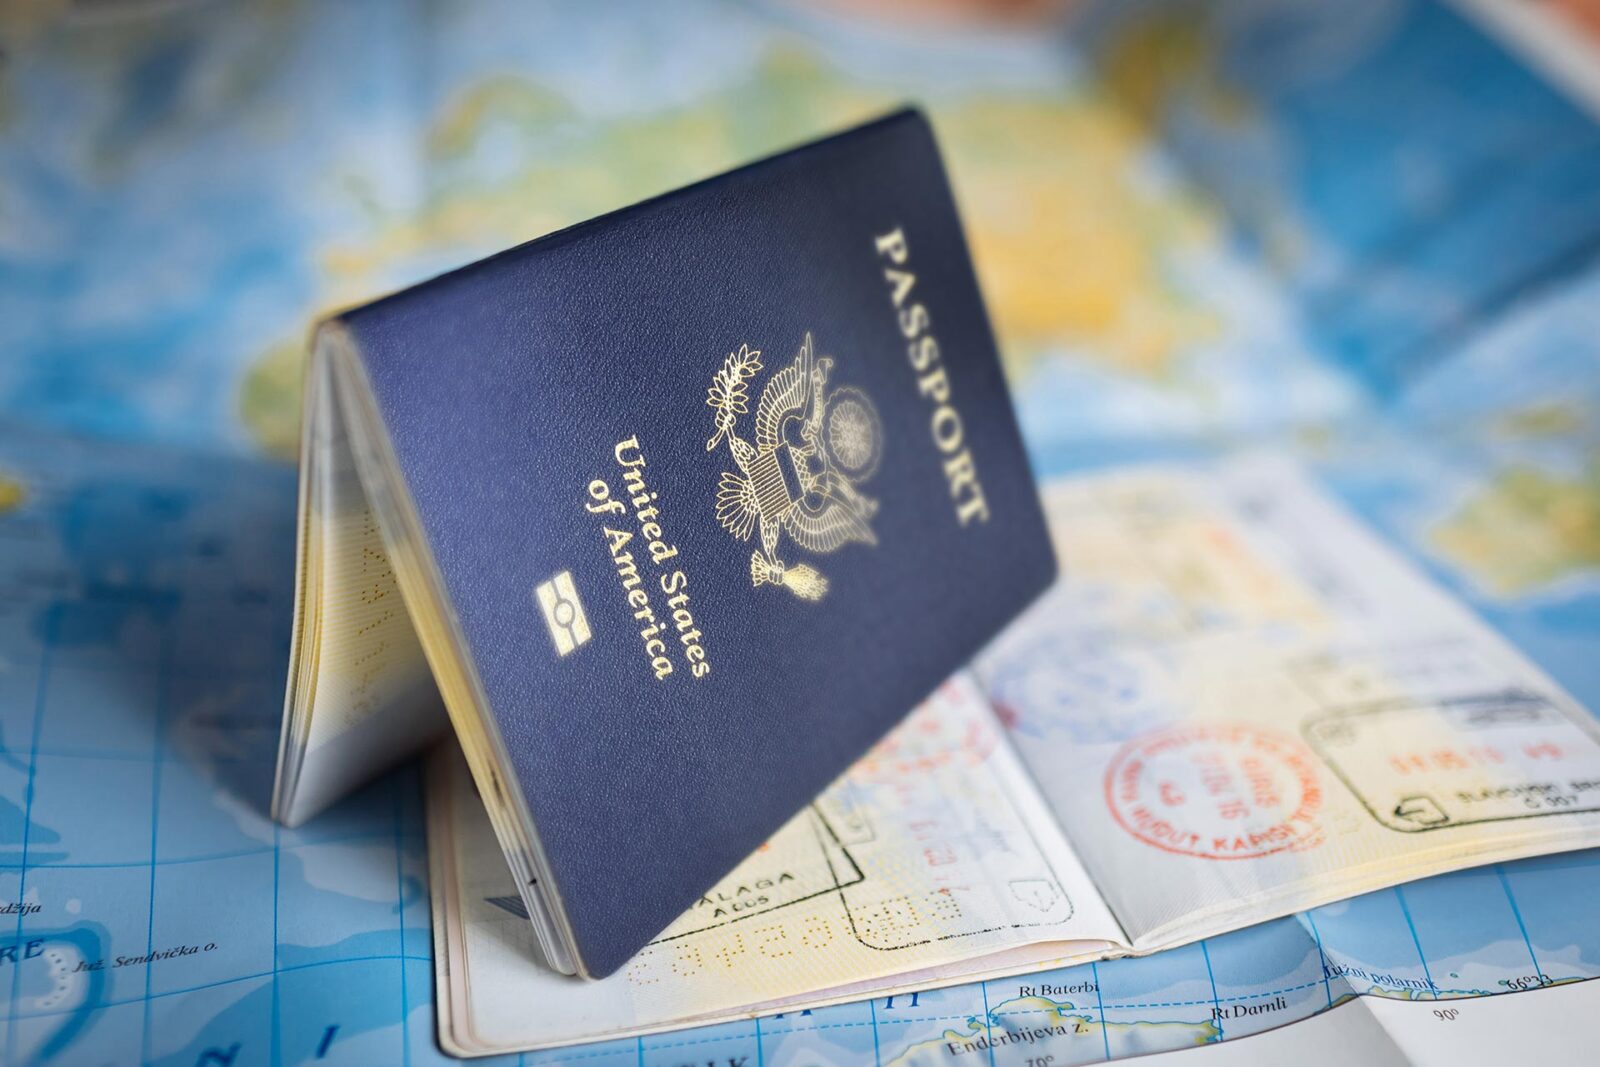 Passport ontop of map